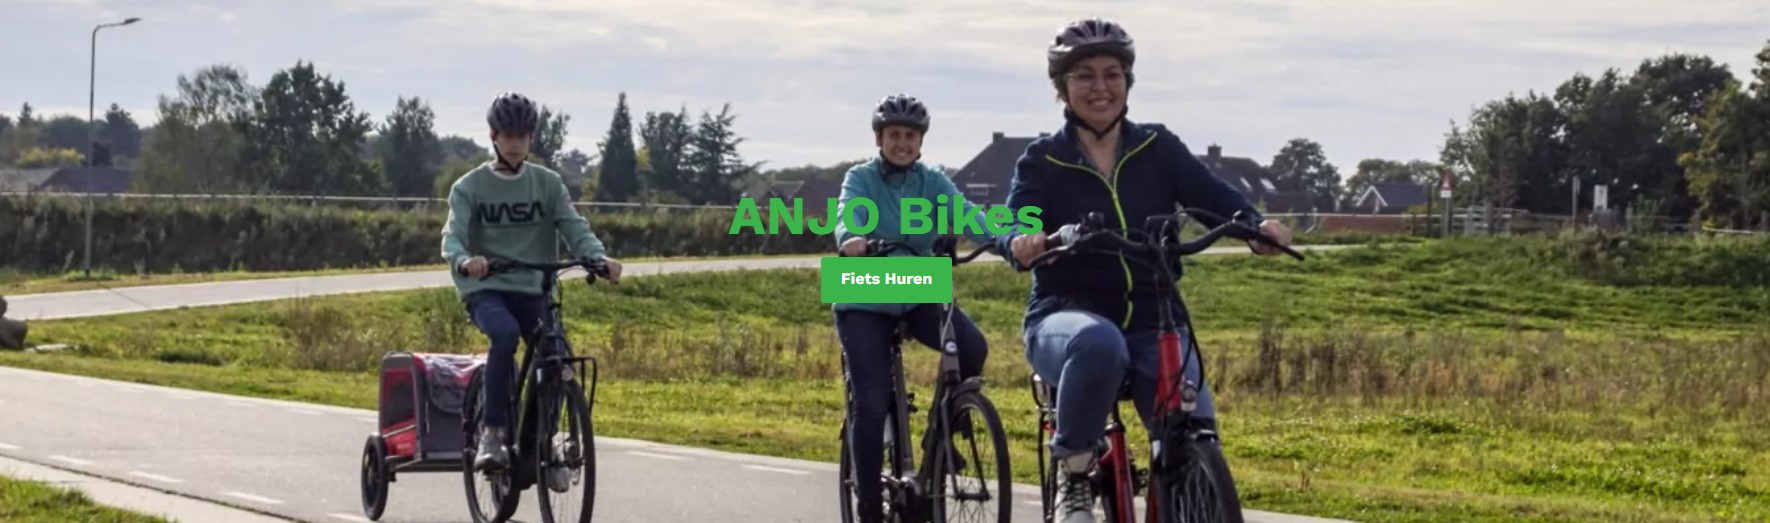 Anjo Bikes